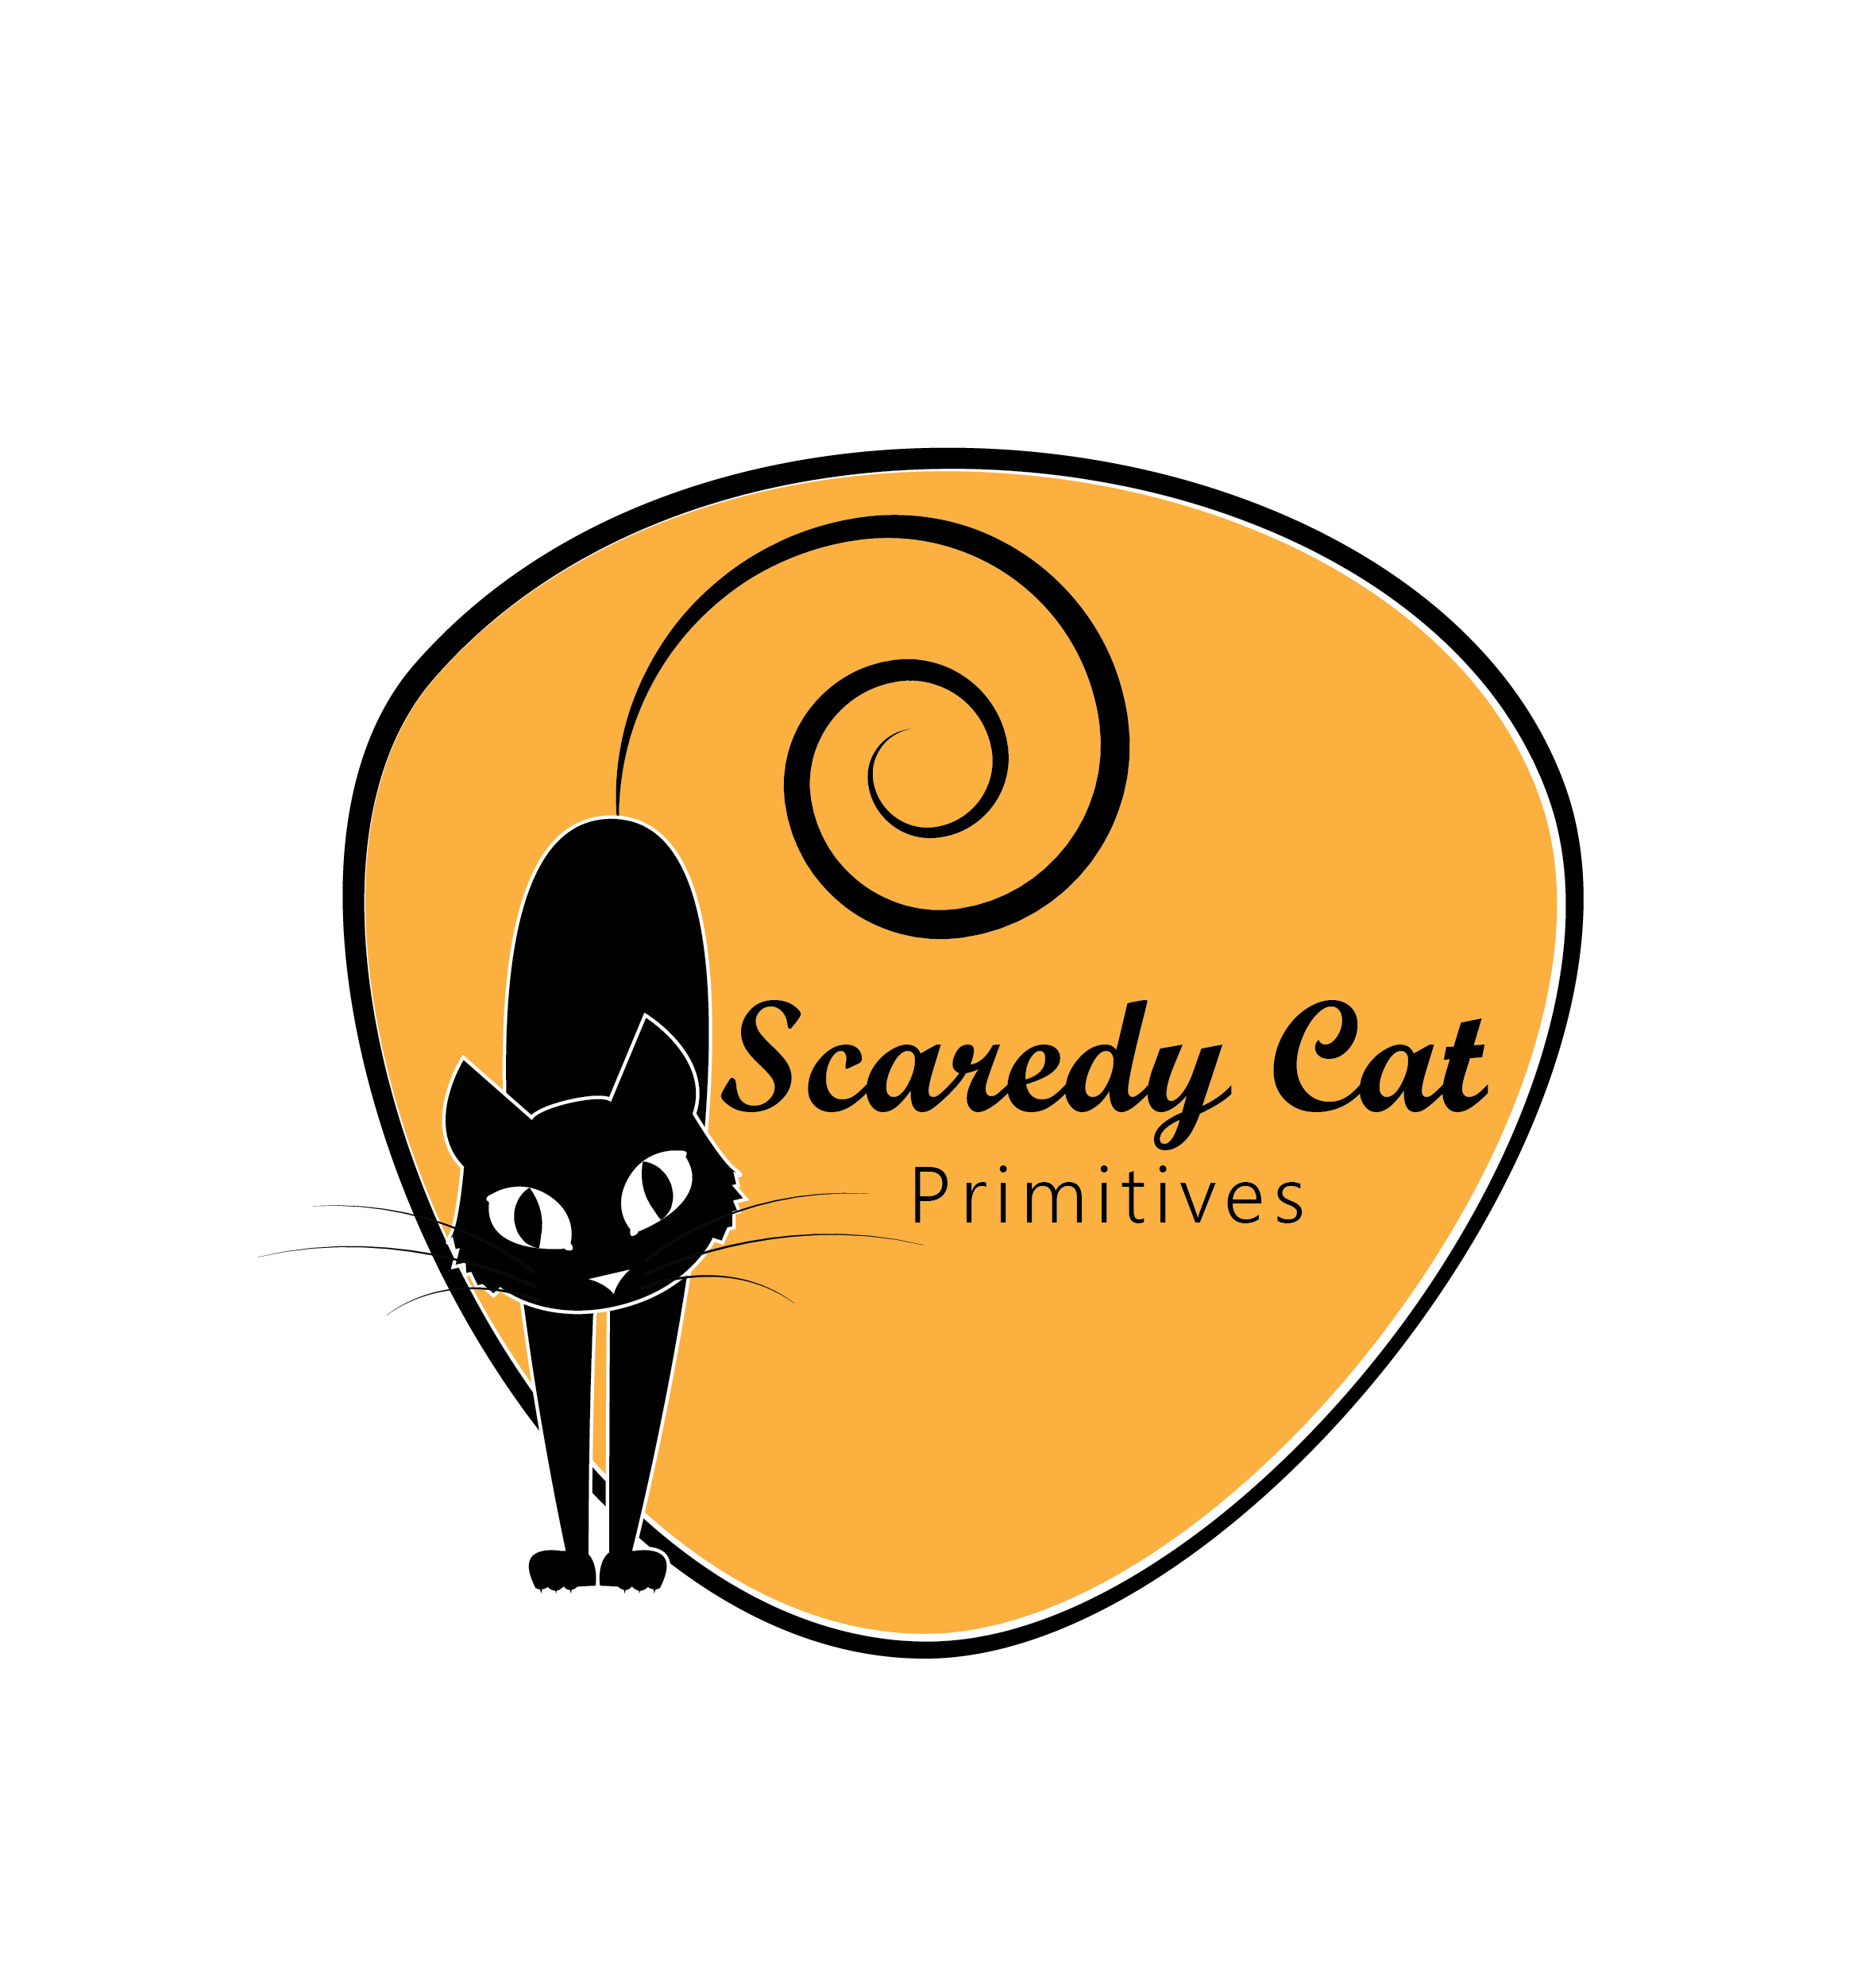 O Que é SCAREDY CAT em Português